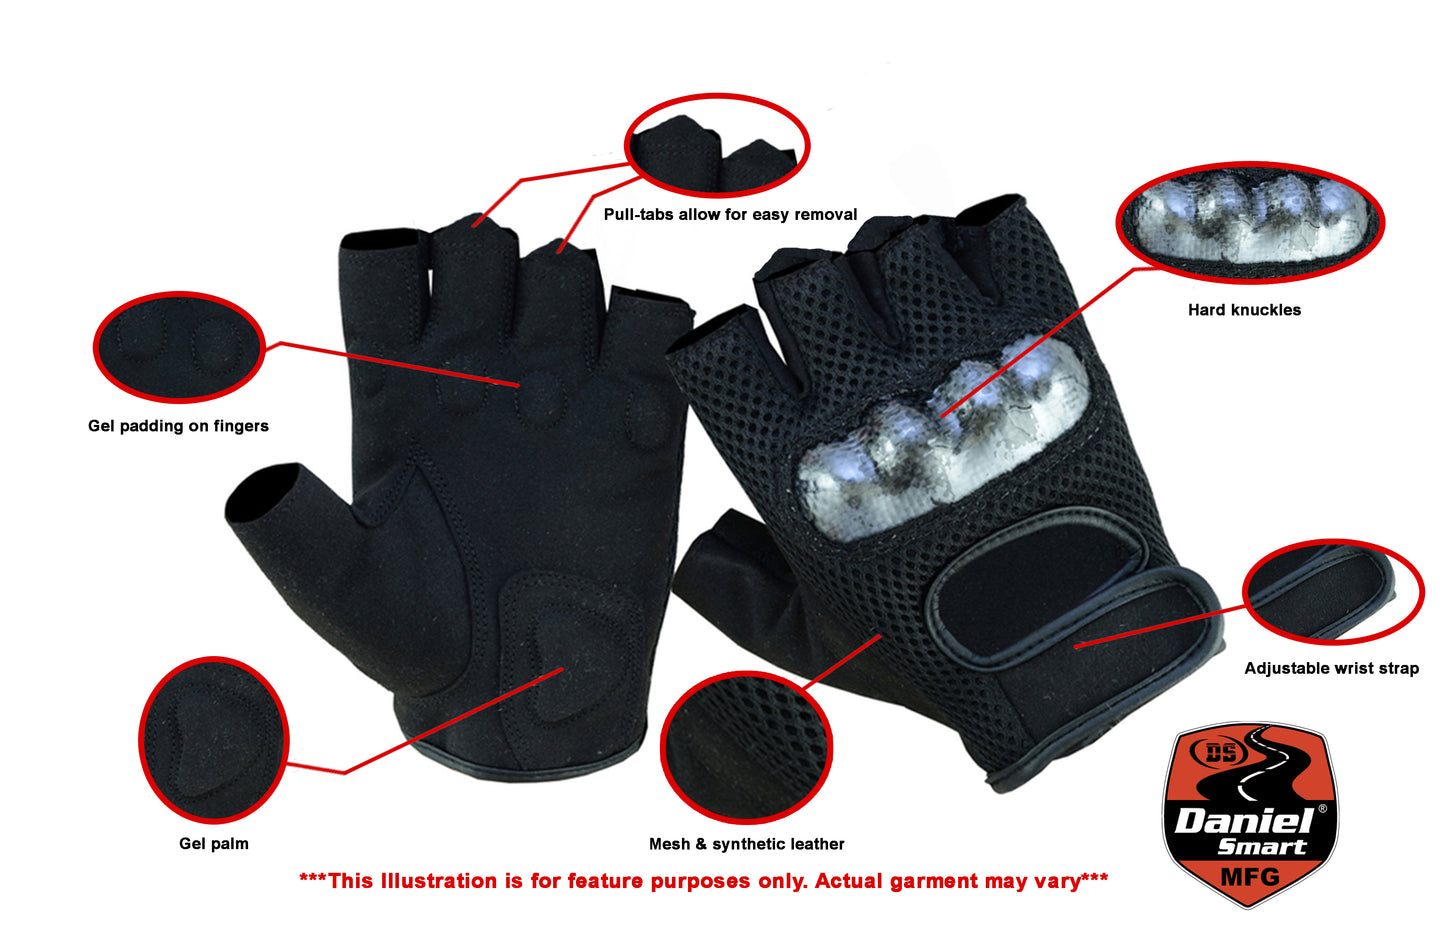 Sporty Mesh Fingerless Glove